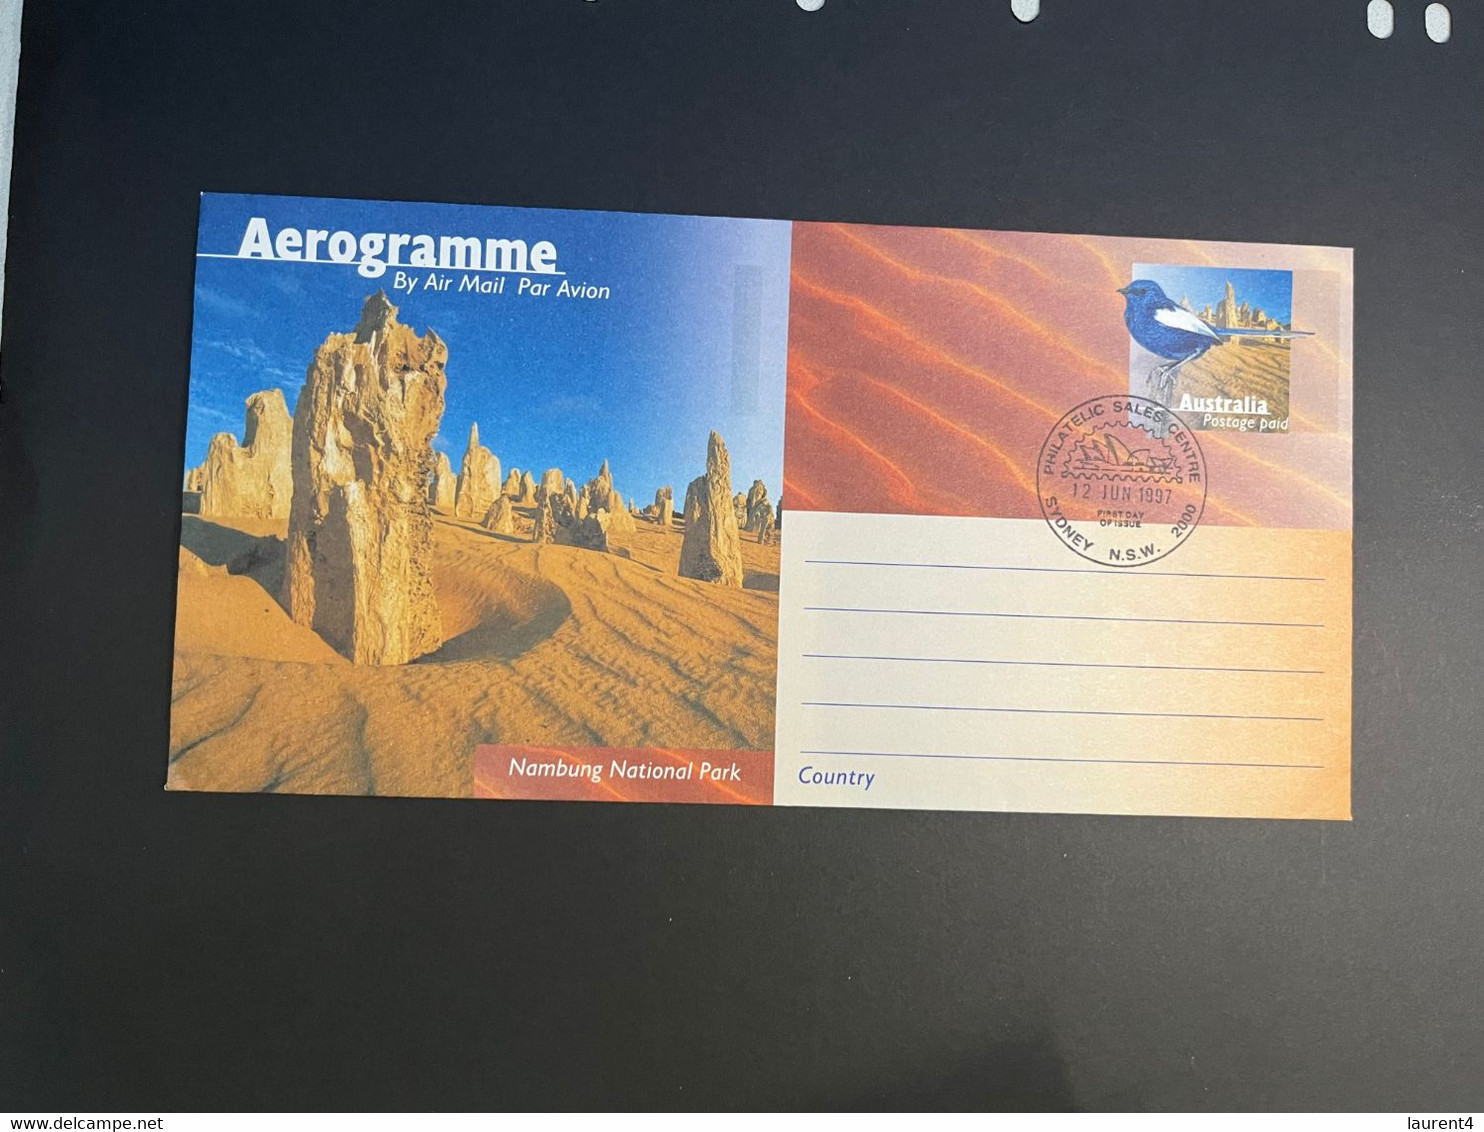 (3 N 45 A) Australia Aerogramme - Australian - National Park (1997 x 5 aerogramme)